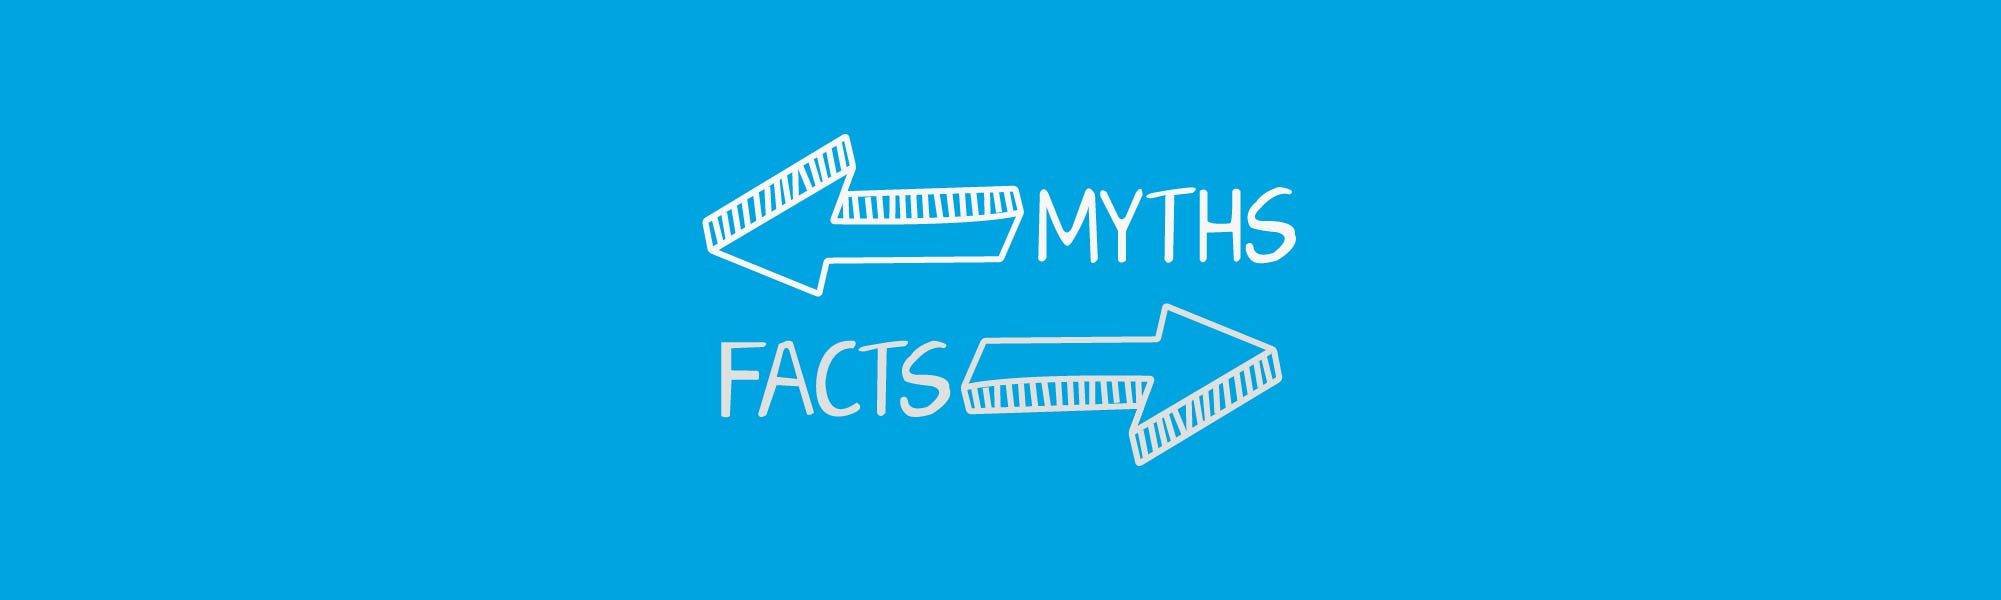 Parkison's Myths